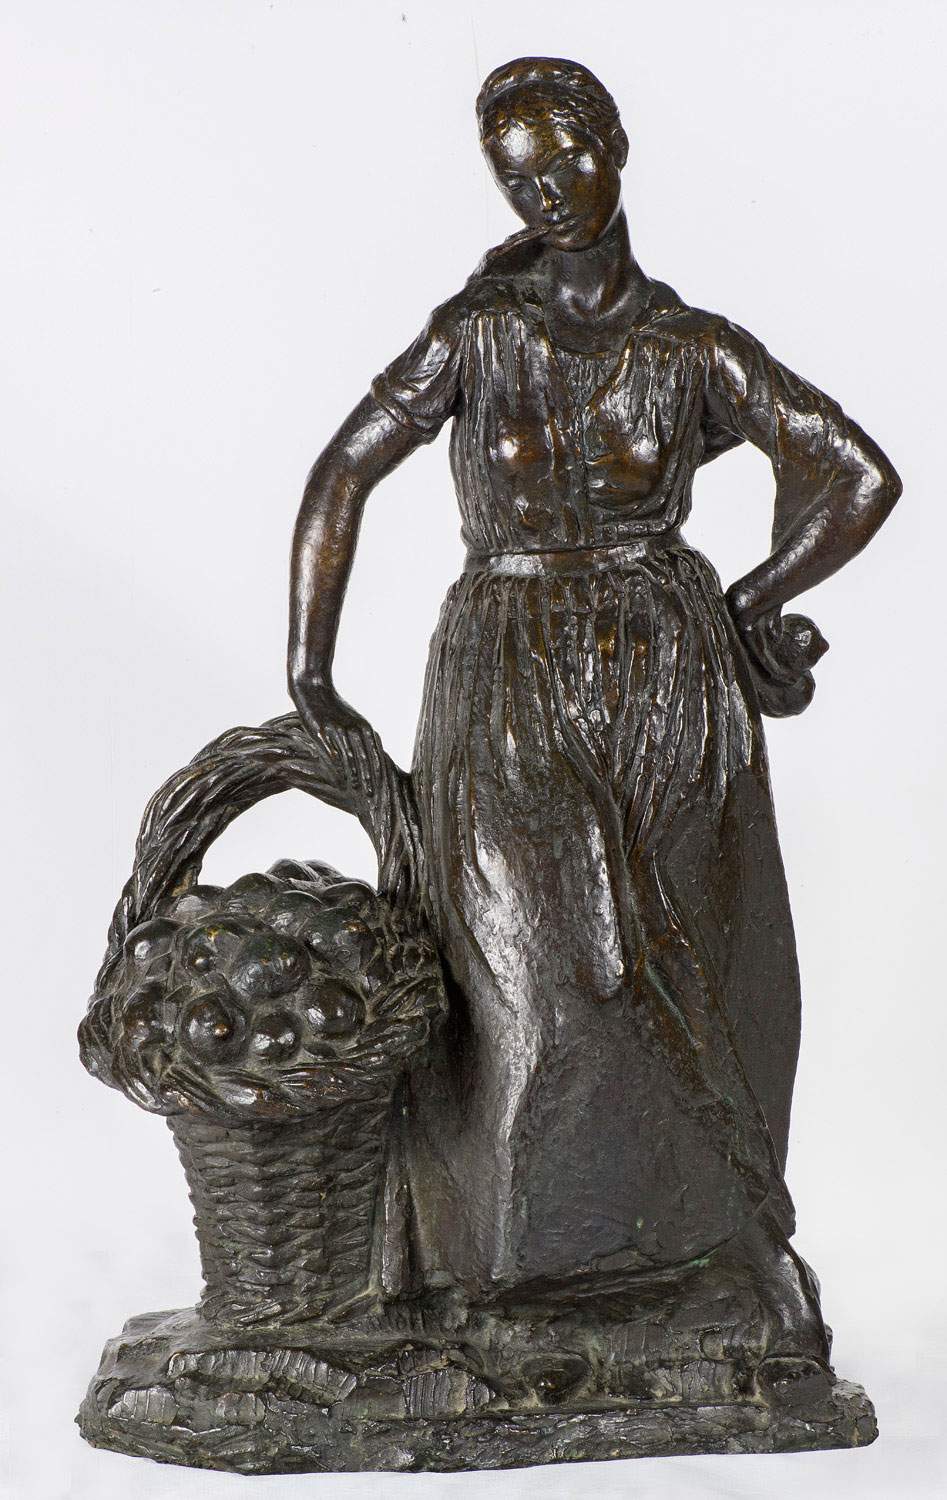 Deux sculptures en bronze de Libero Andreotti entrent dans les collections du palais Pitti